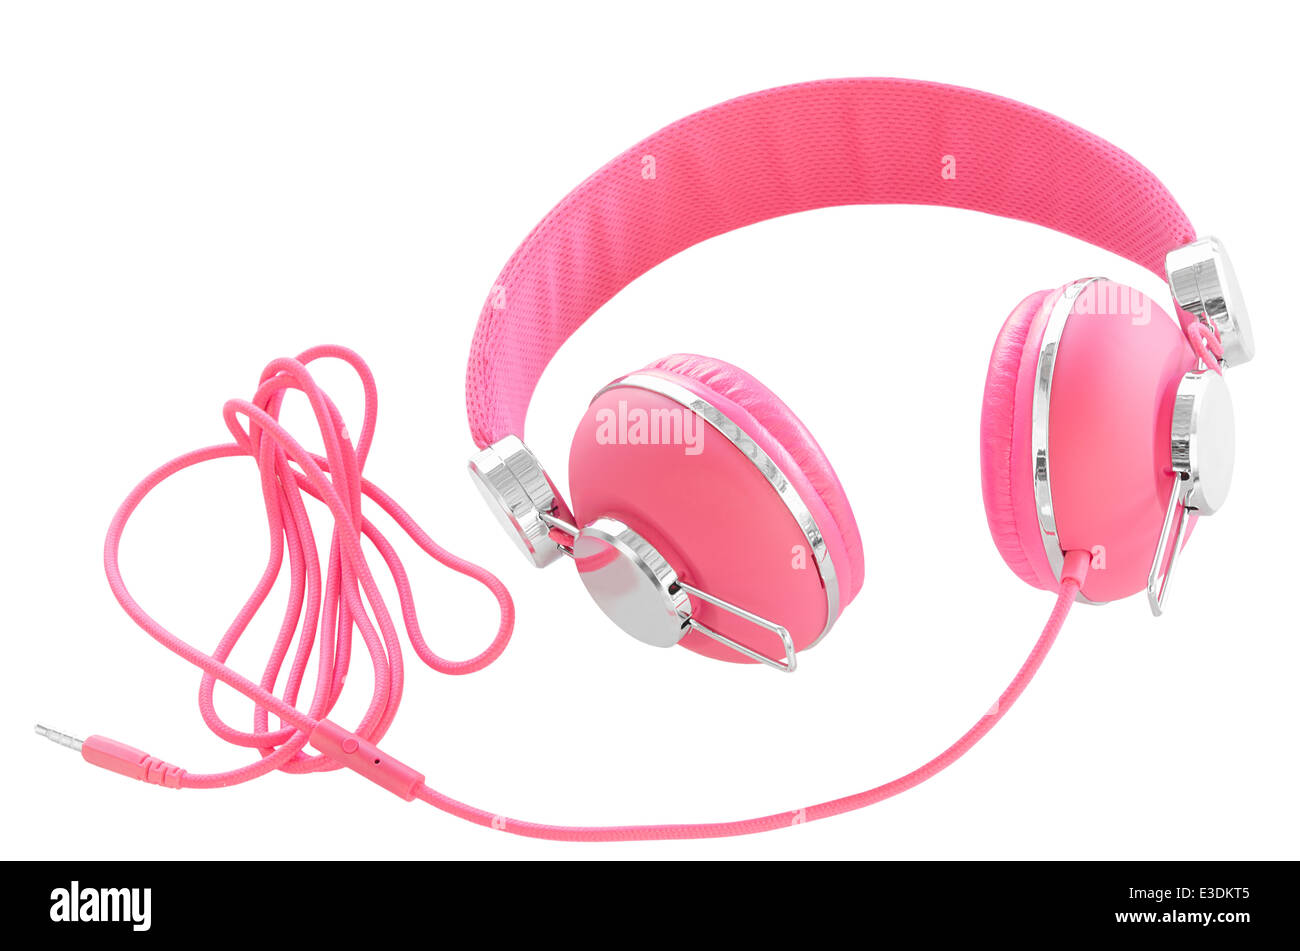 Hembra de color rosa pastel auriculares coloridos aislado en blanco Foto de stock